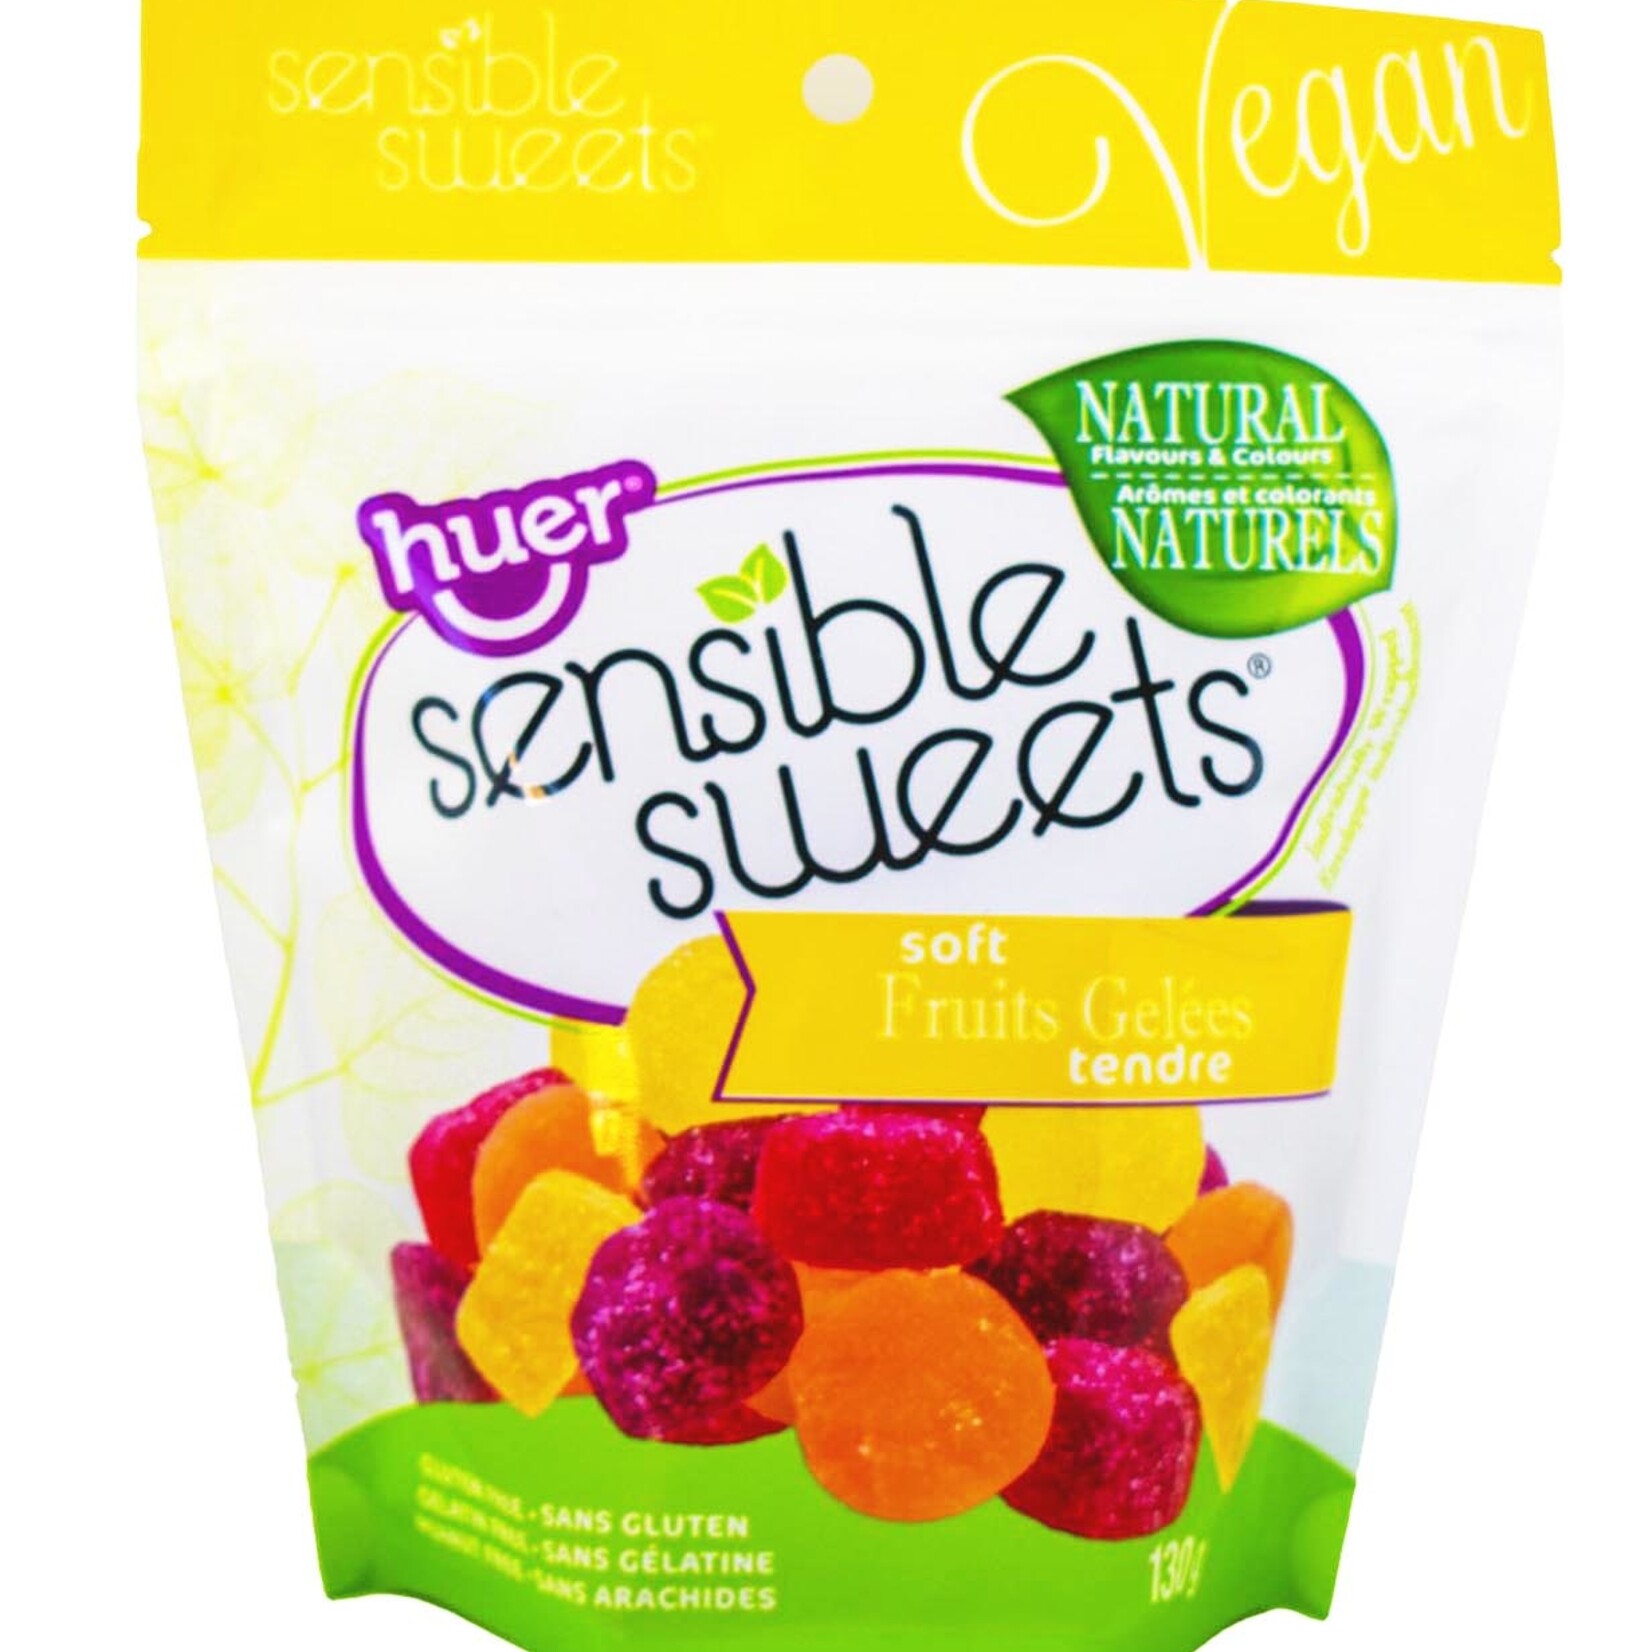 Huer Sensible Sweets Soft Fruits Gelées 130g